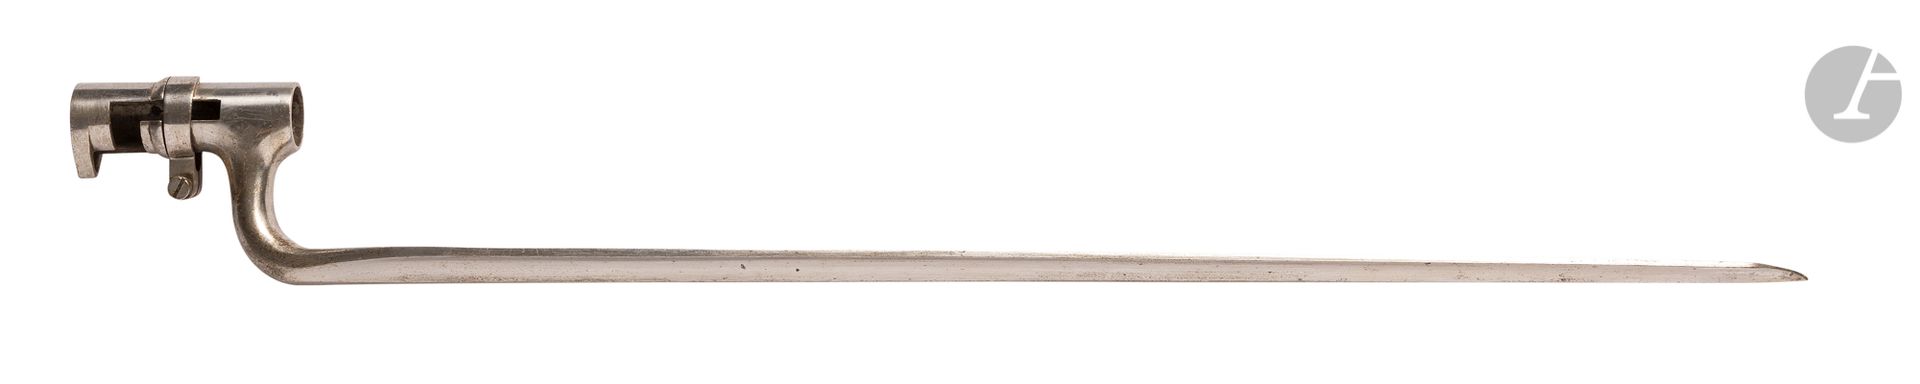 Null 
Baionetta
USA 
modello 1871. 
Presa con ghiera mediana. Lama triangolare. &hellip;